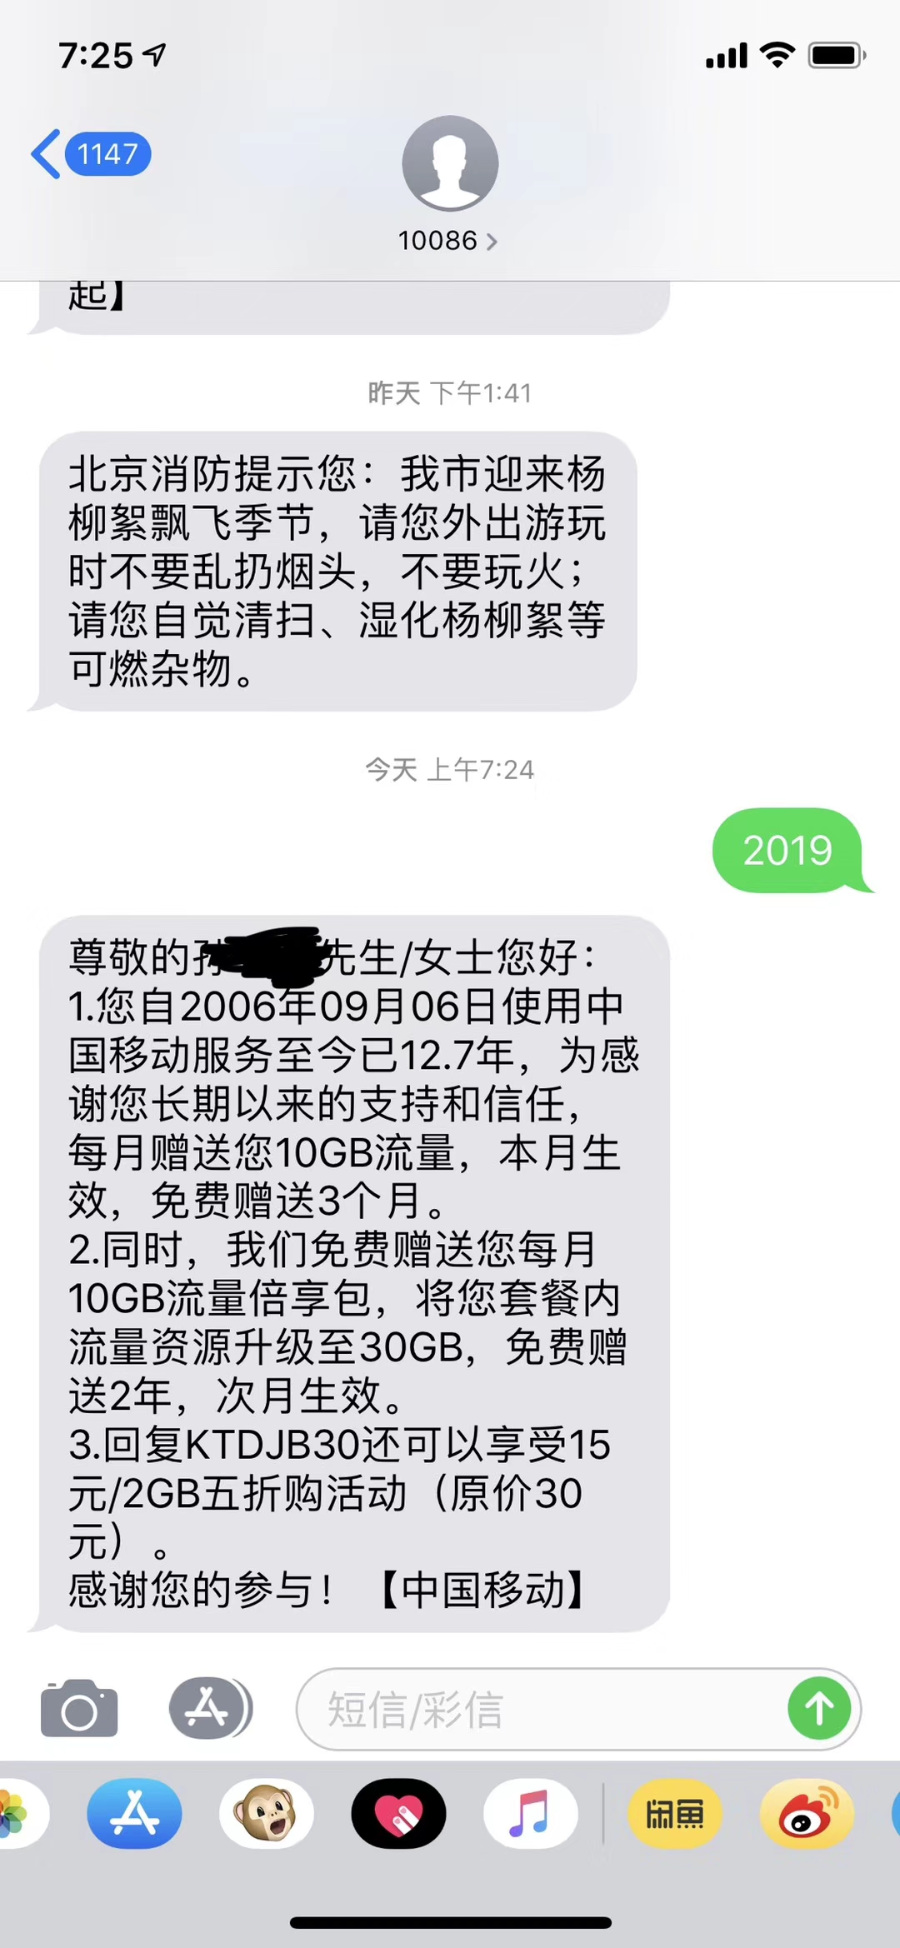 中国移动免费赠送10GB流量，连送3个月！发送2019到10086领取！亲测有效！